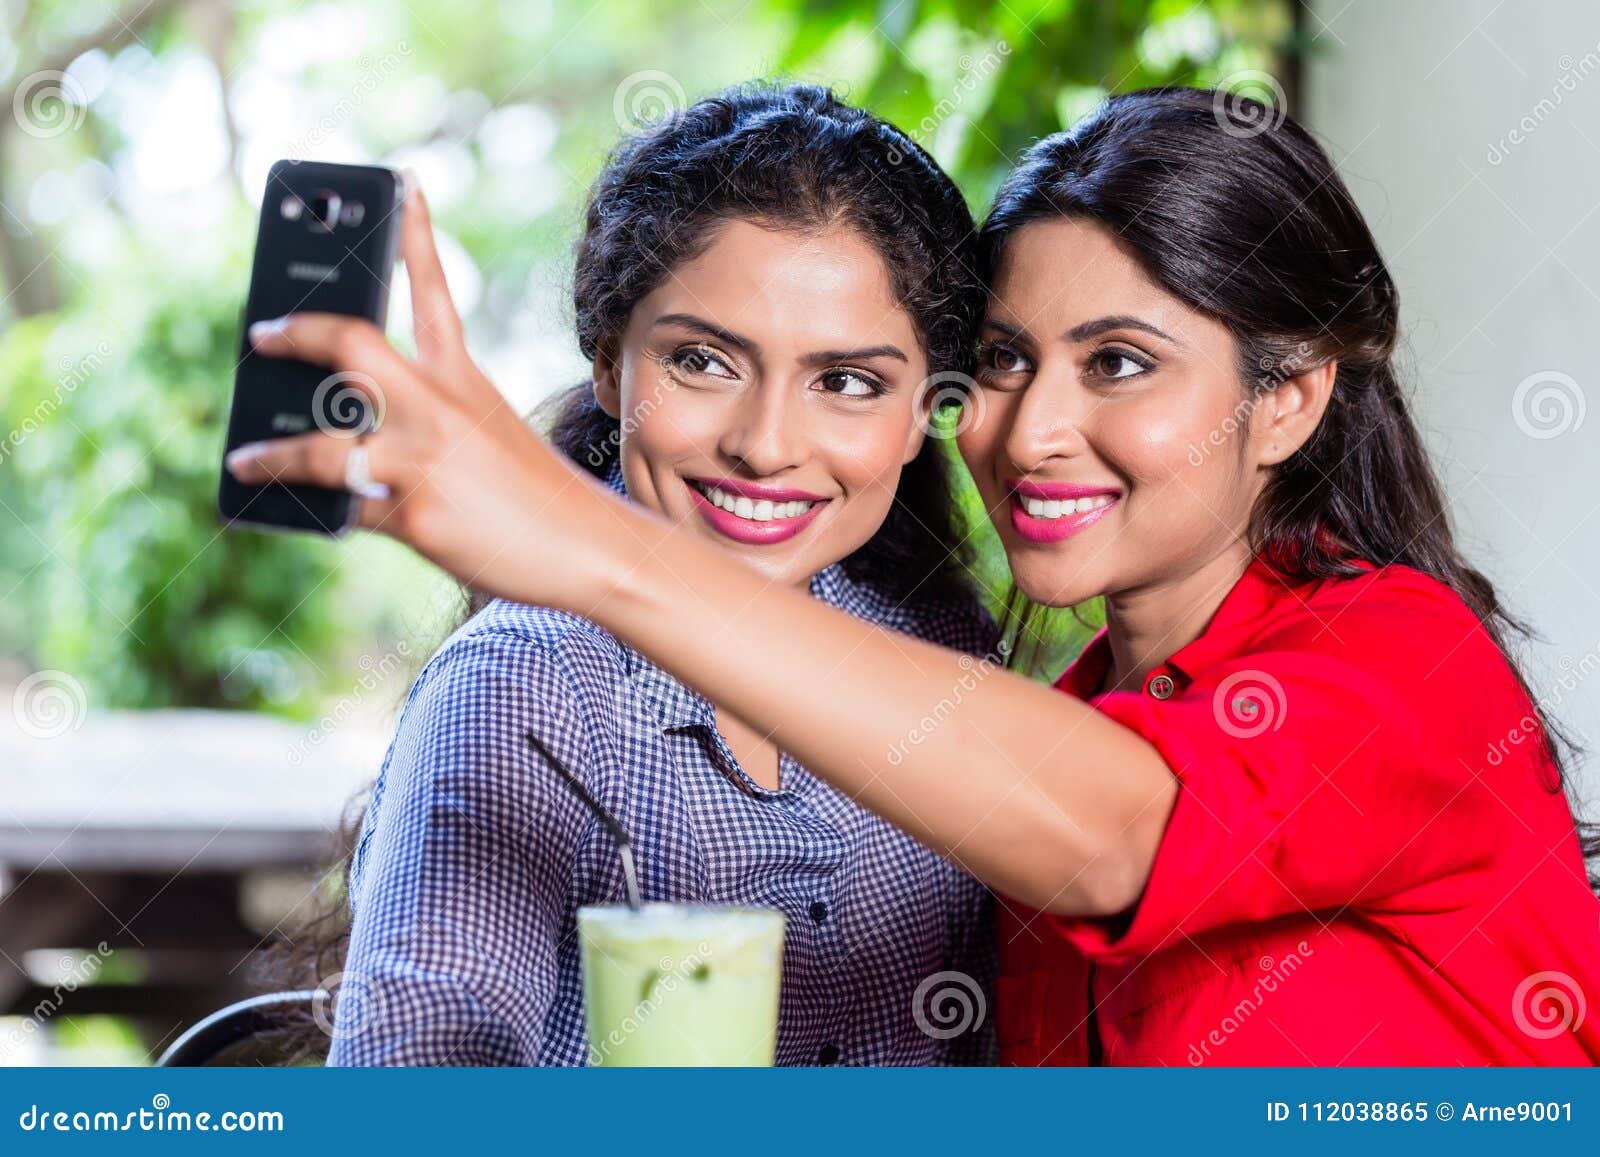 galleries indian selfie